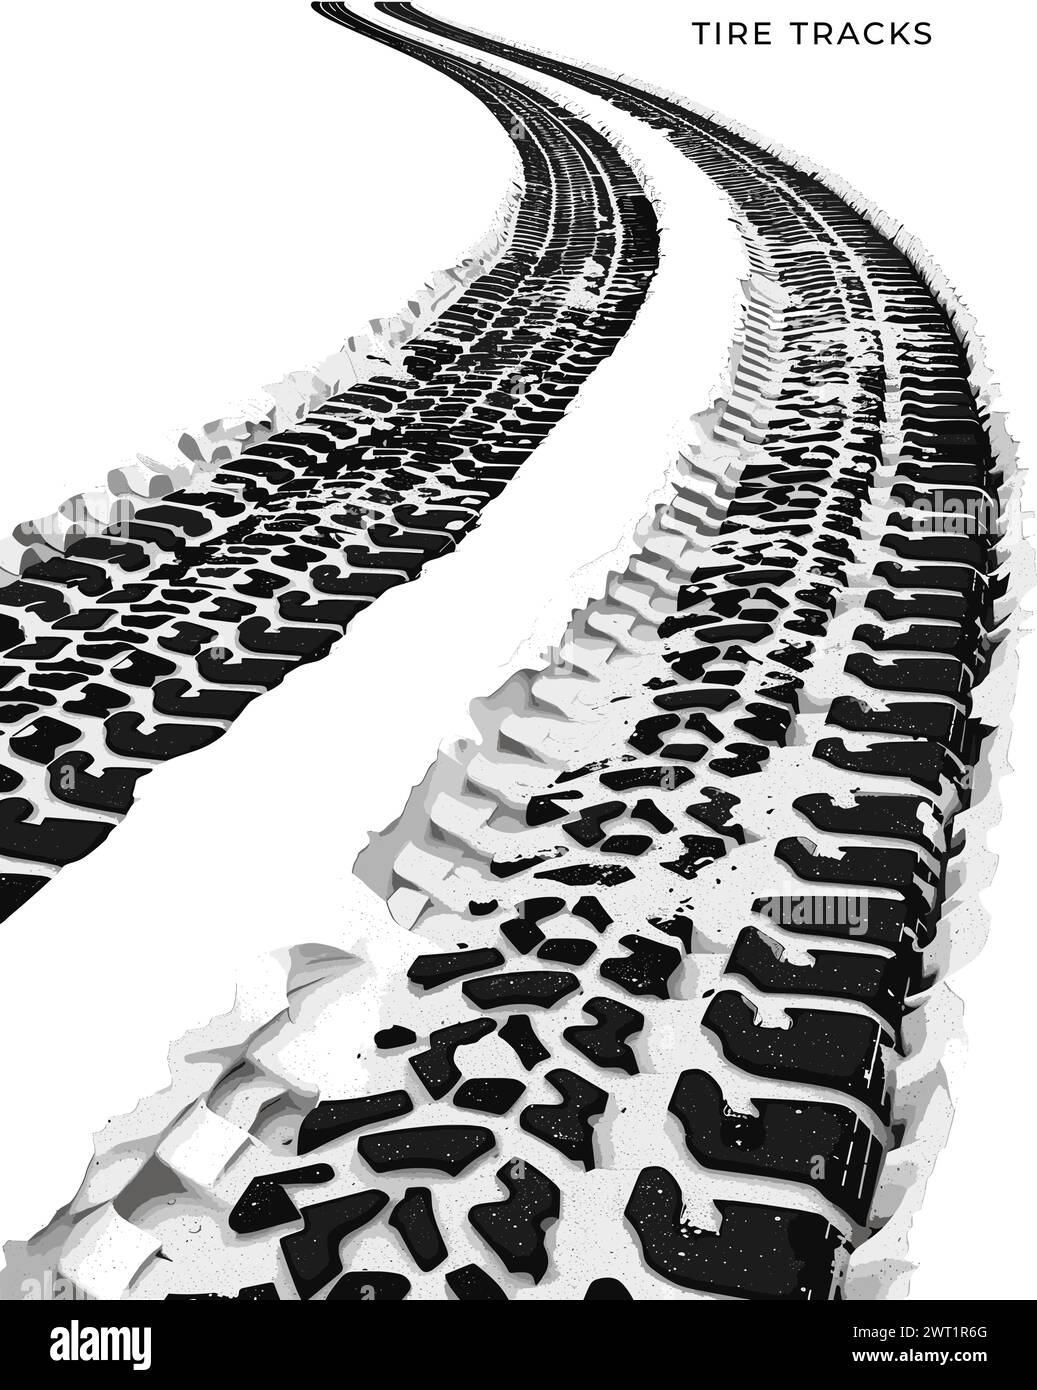 Illustrazione vettoriale delle tracce degli pneumatici isolata su sfondo bianco Illustrazione Vettoriale